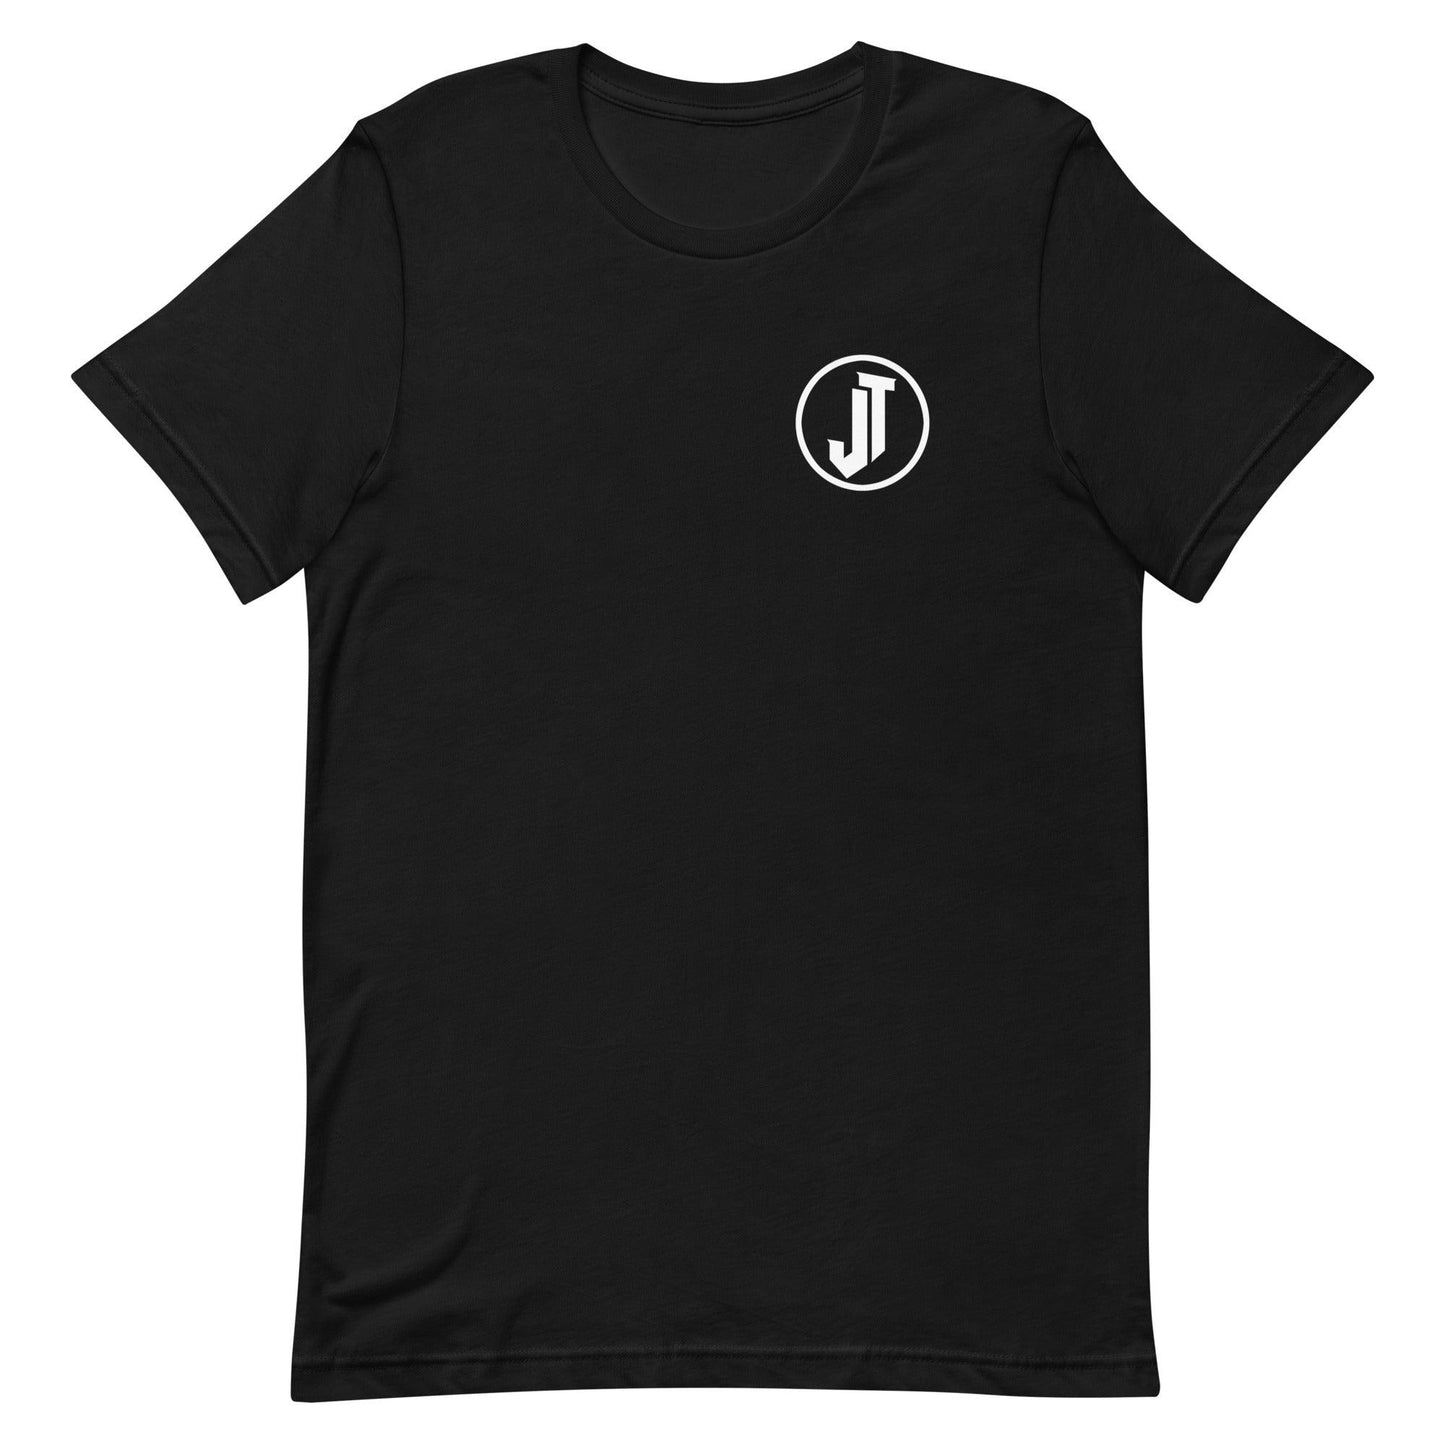 Jaylon Tate "Elite" t-shirt - Fan Arch